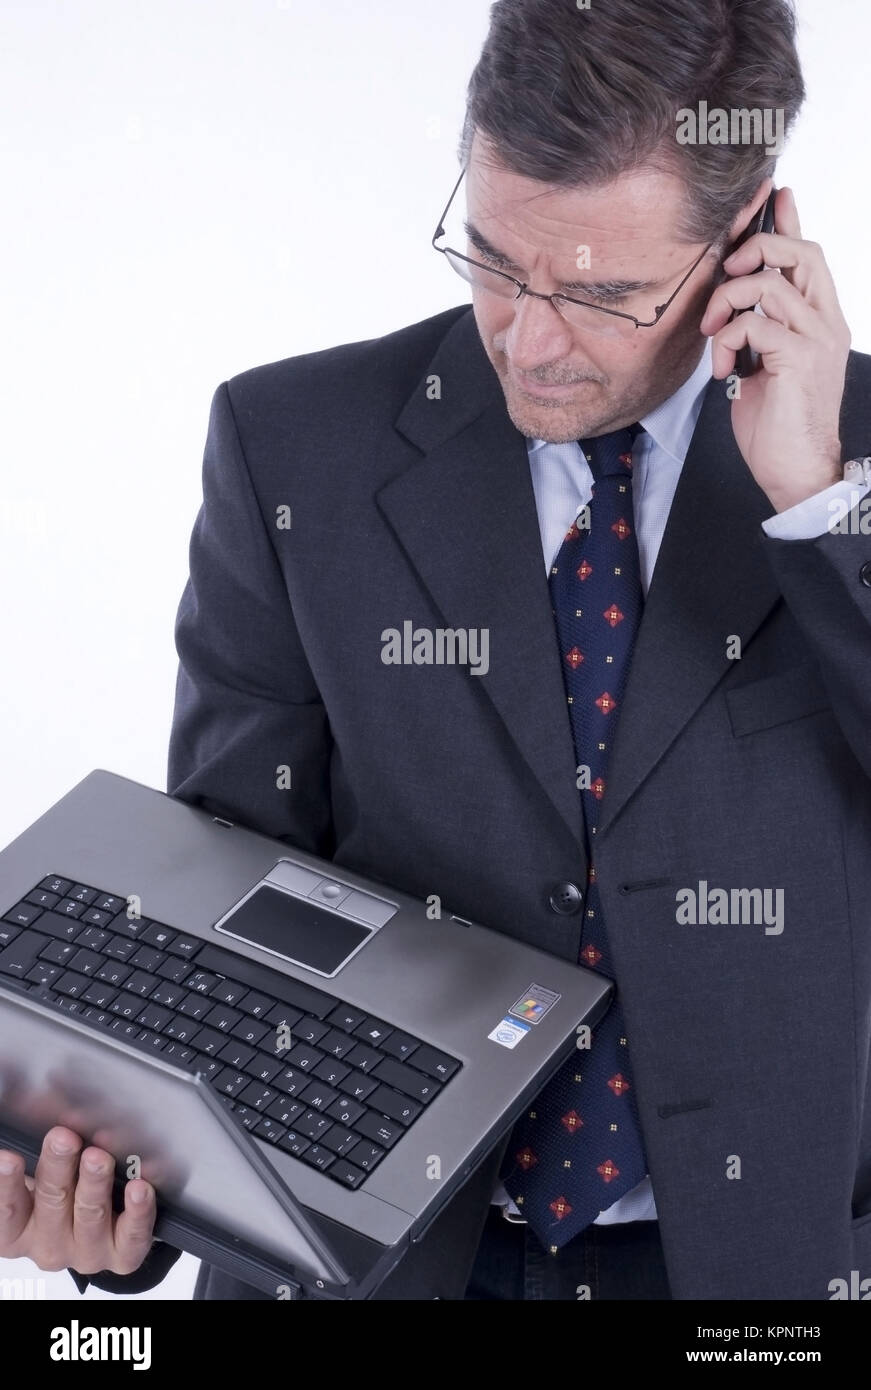 Geschaeftsmann, 50+, mit Laptop und Handy - business man with laptop Stock Photo